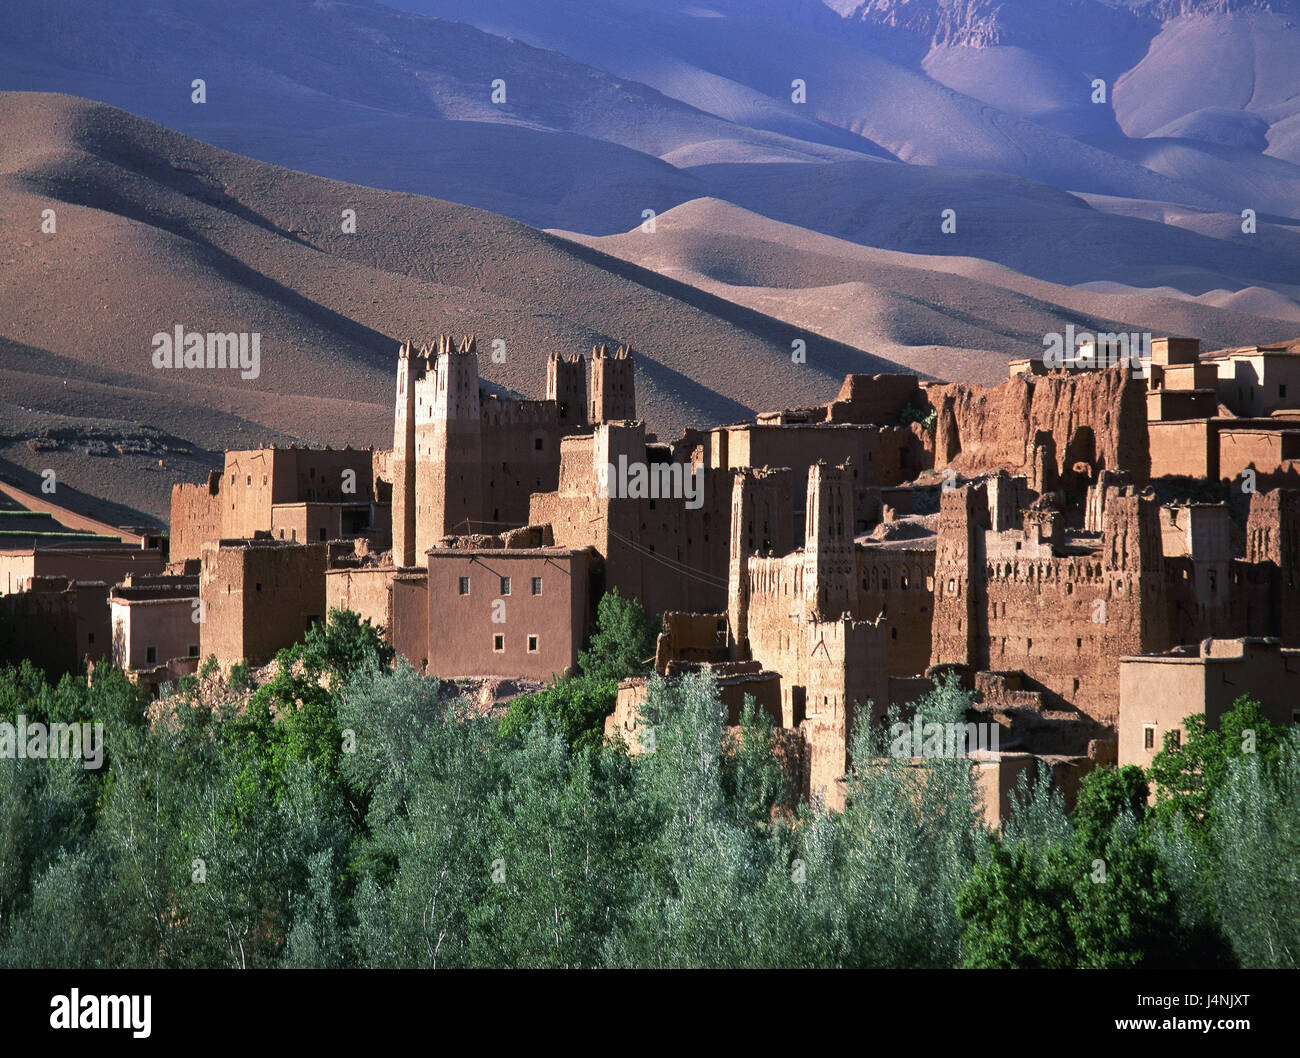 Il Marocco, Dades valley, kasbah, monti Atlante, Africa, Nord Africa, Dadestal, paesaggi, montagne, edifici, struttura, fortezza, castello fortezza, allegato, Foto Stock